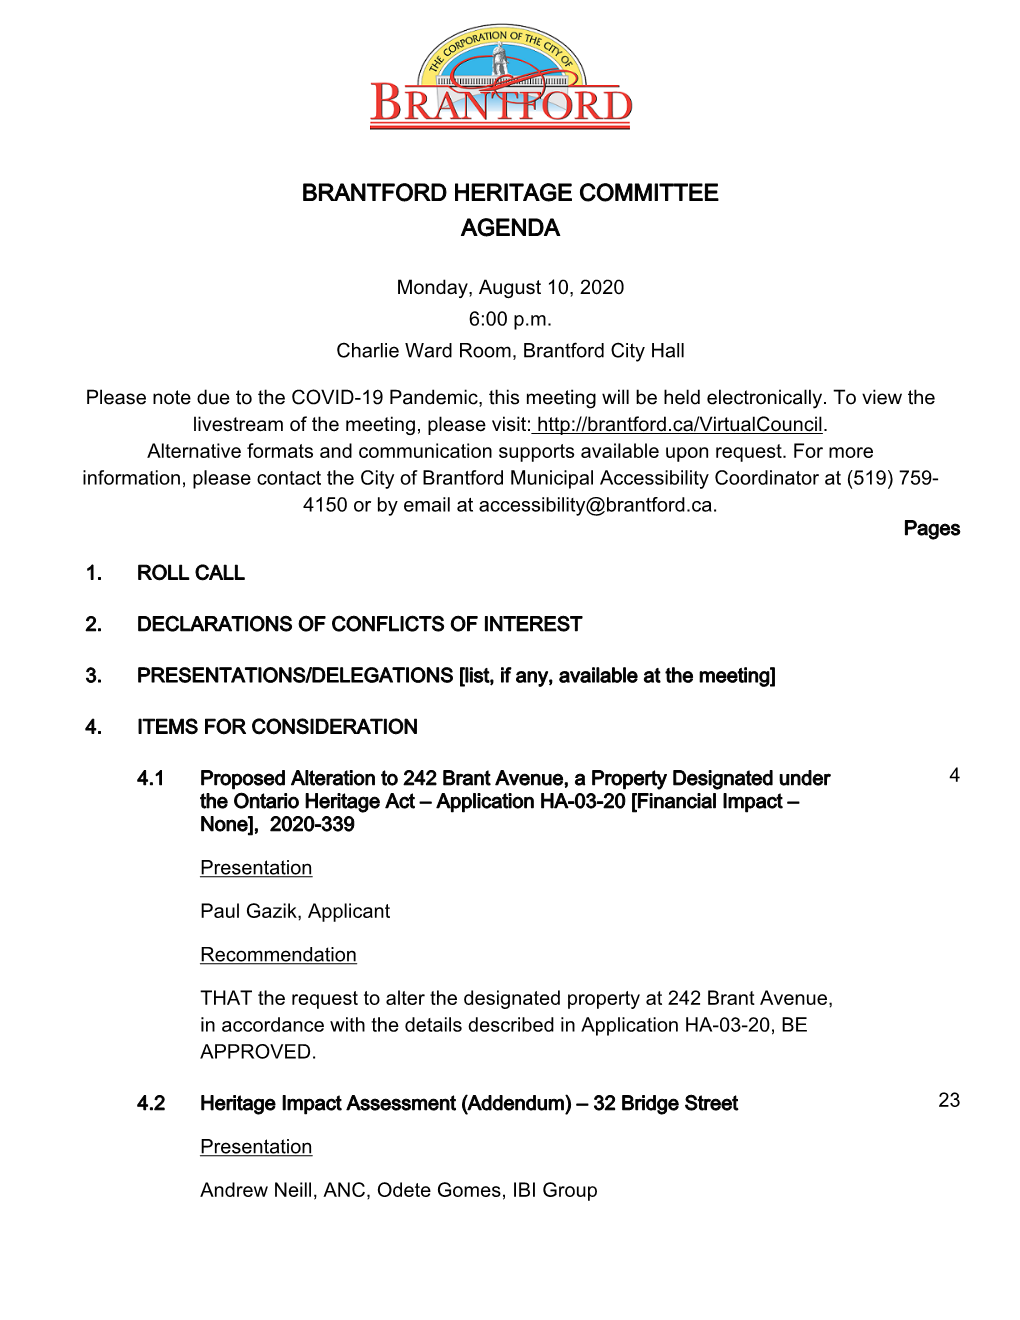 Brantford Heritage Committee Agenda Package